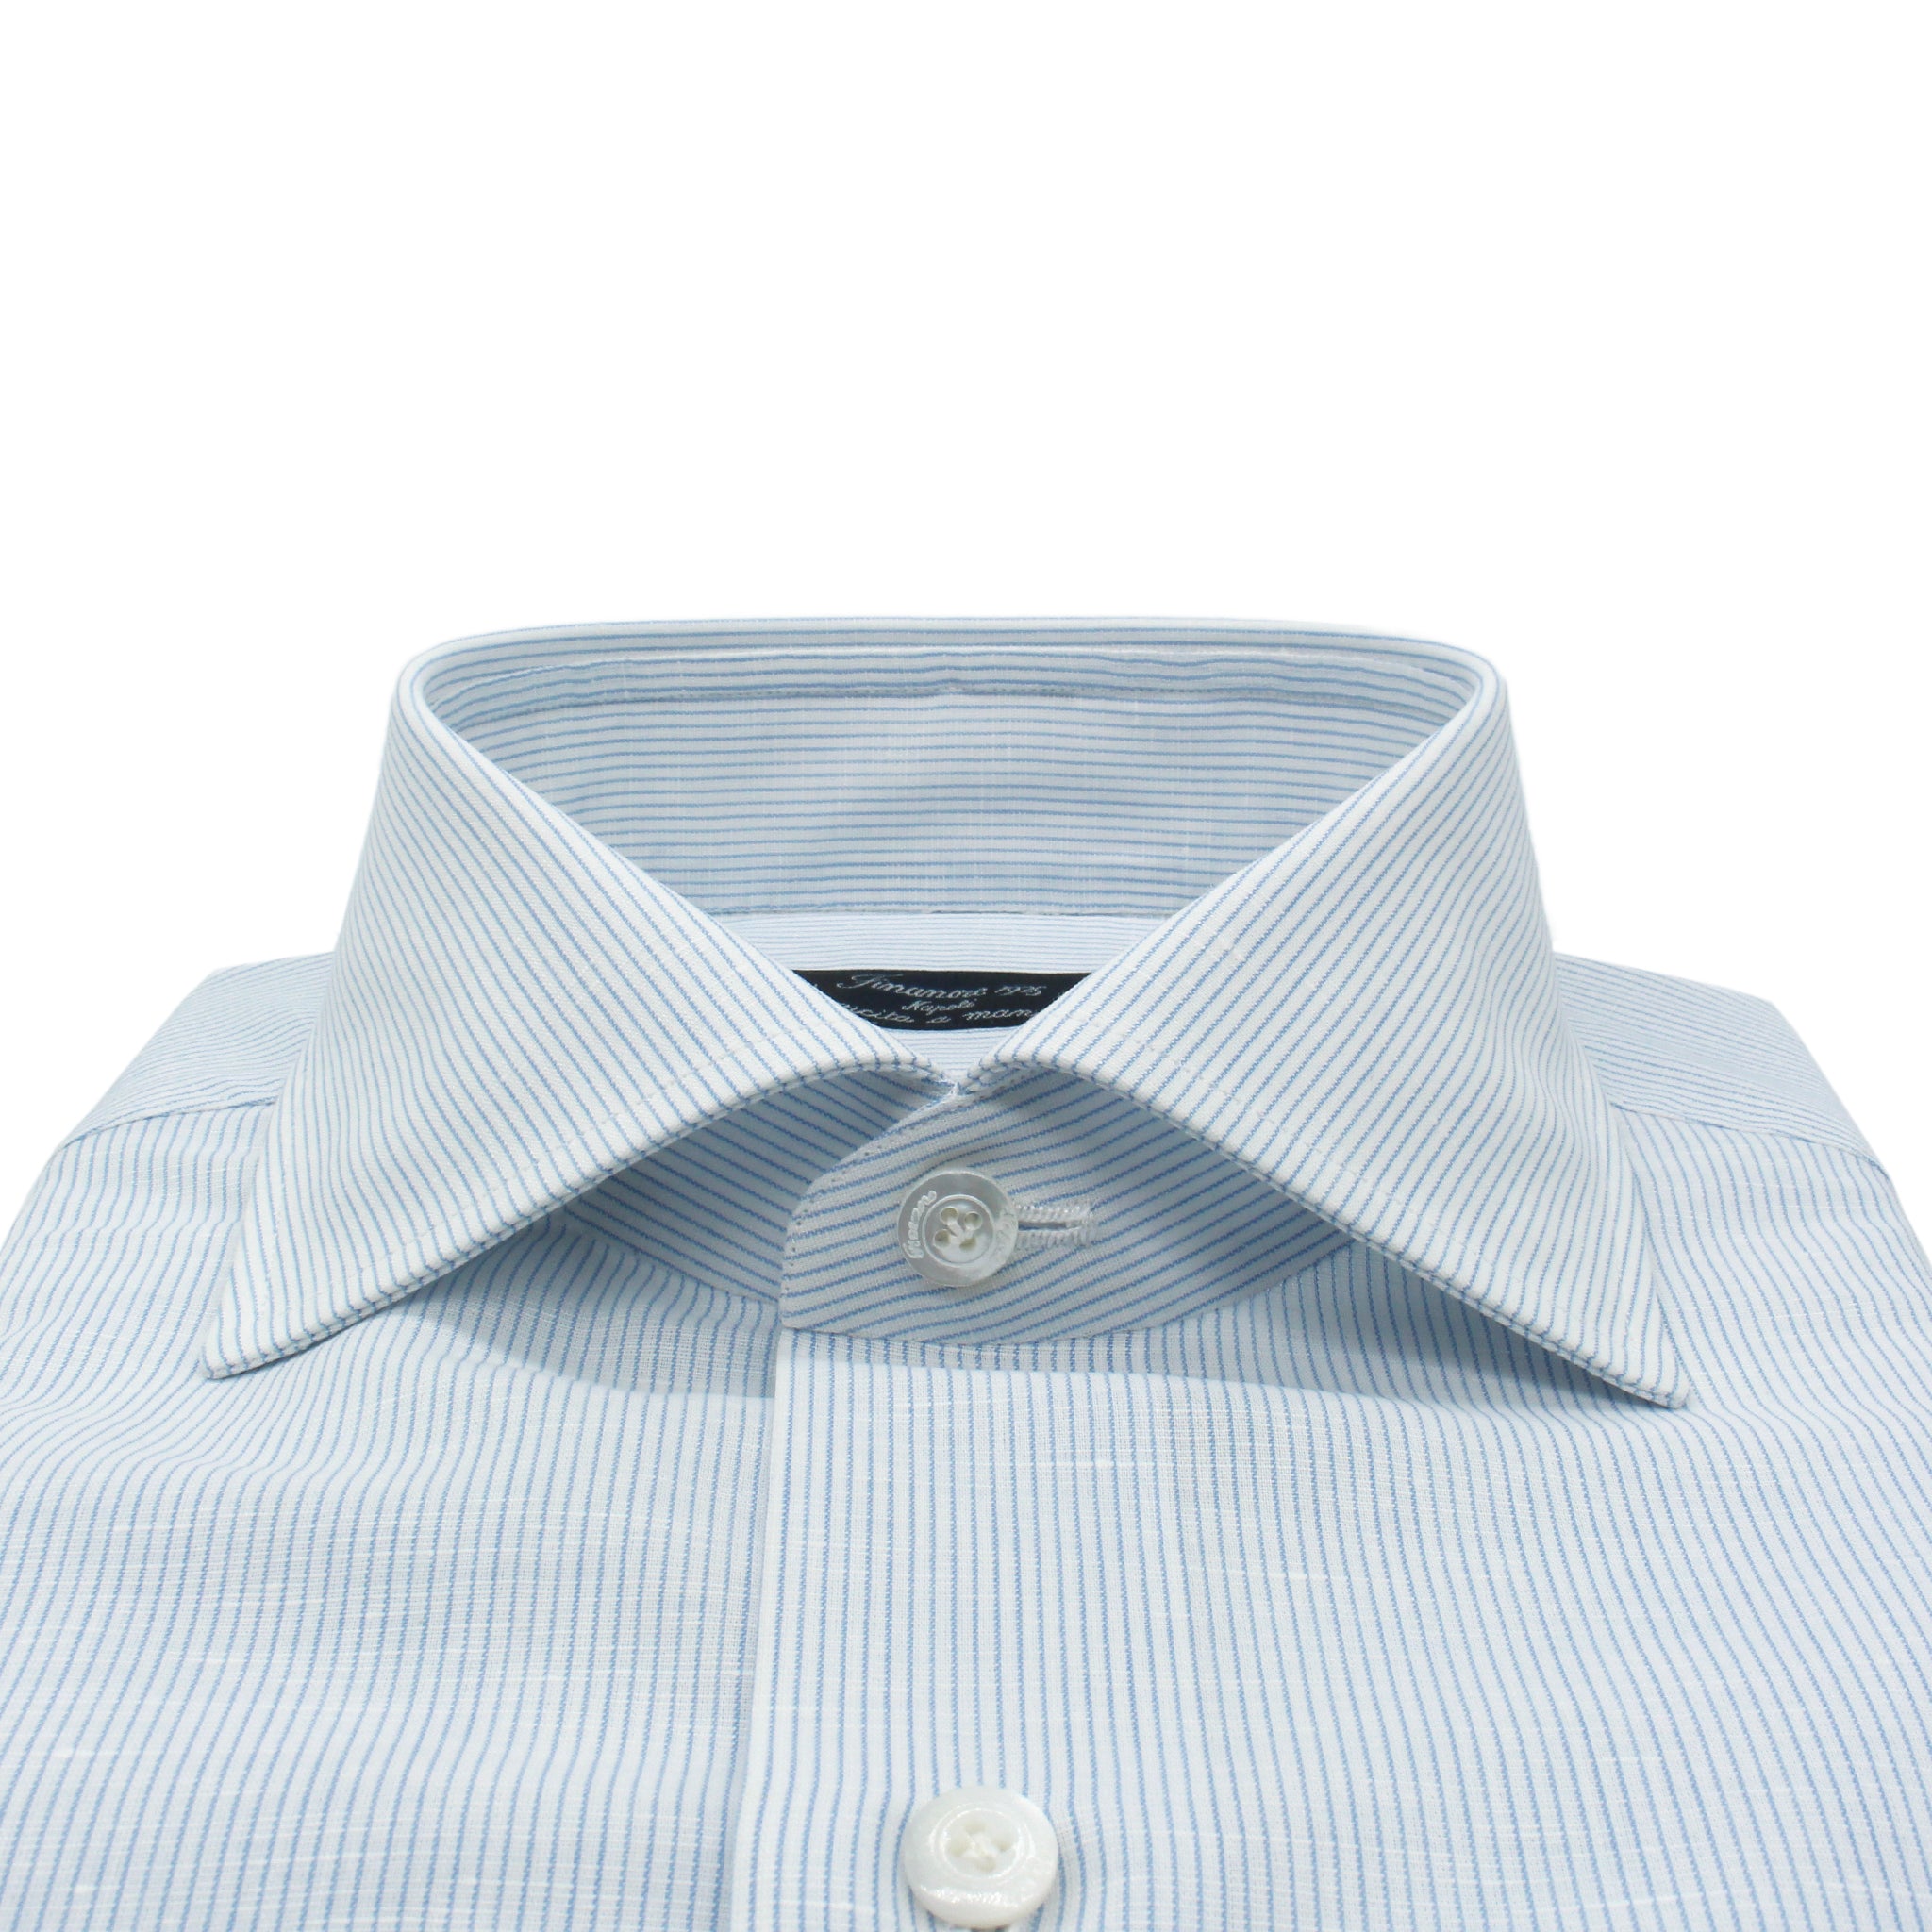 Camicia Napoli regular fit a righe azzurre in lino e cotone